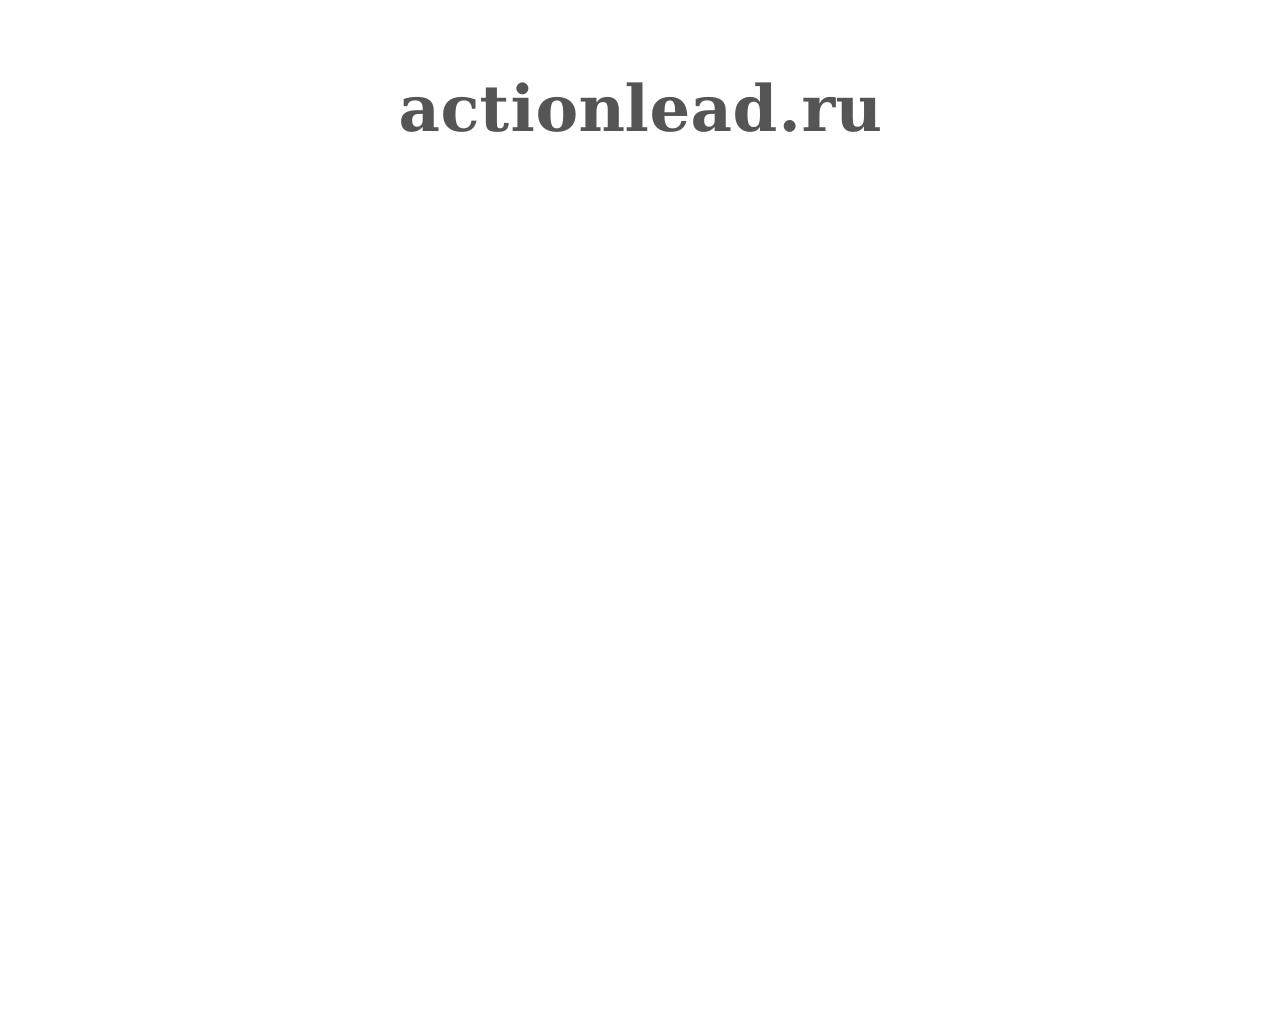 Изображение сайта actionlead.ru в разрешении 1280x1024